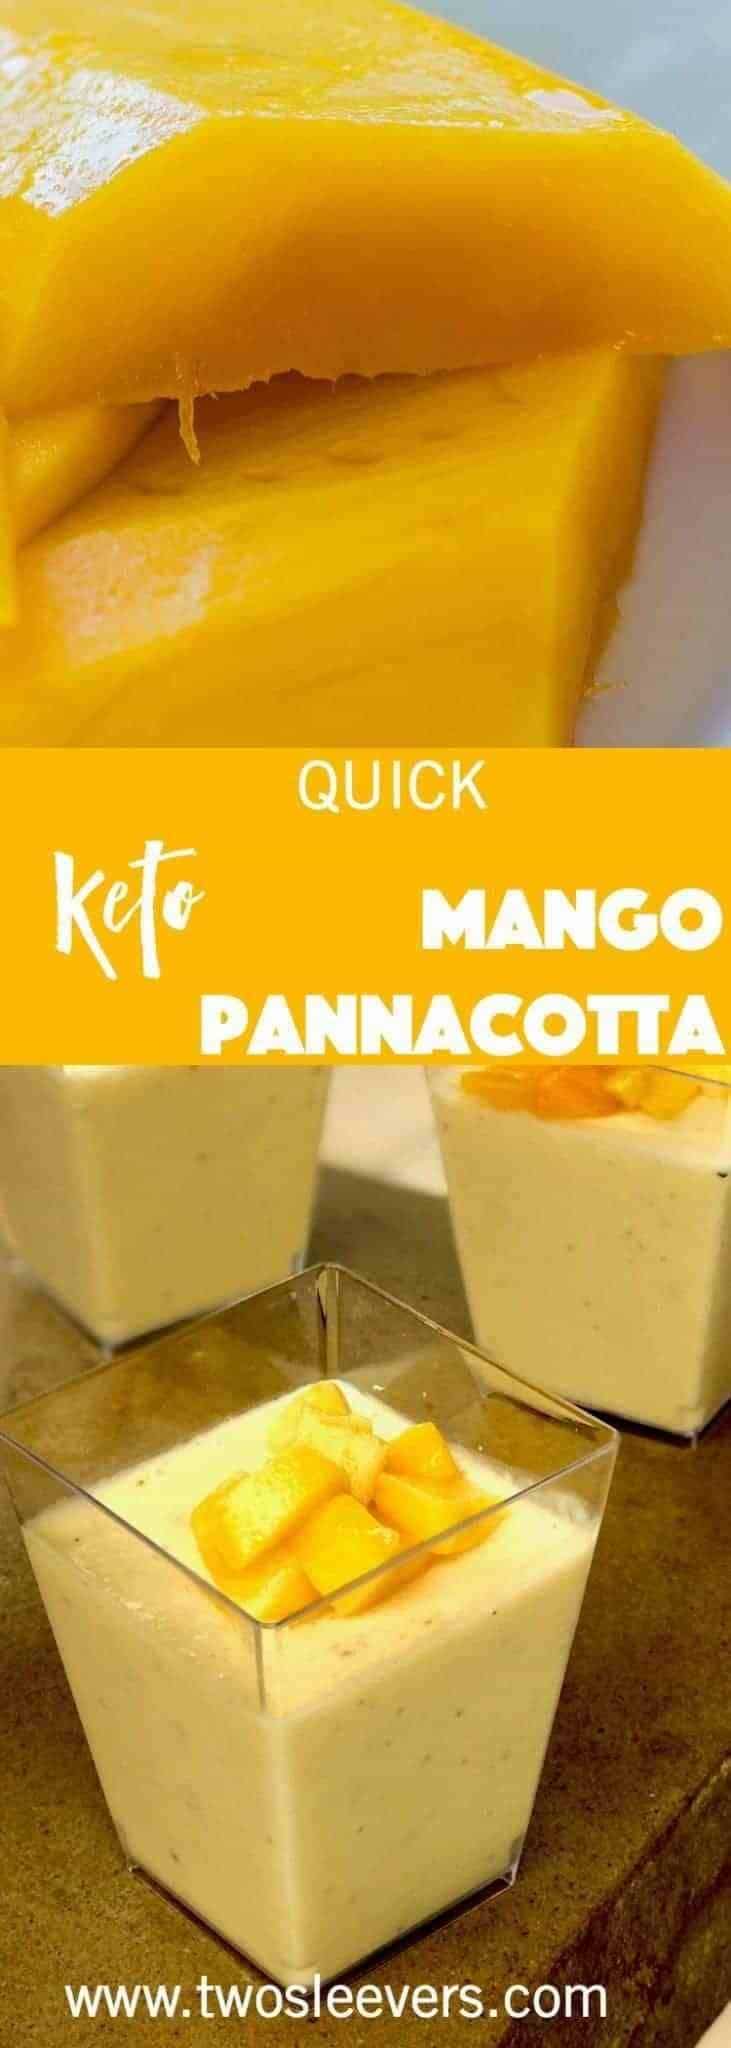 Quick Keto Mango Pannacotta